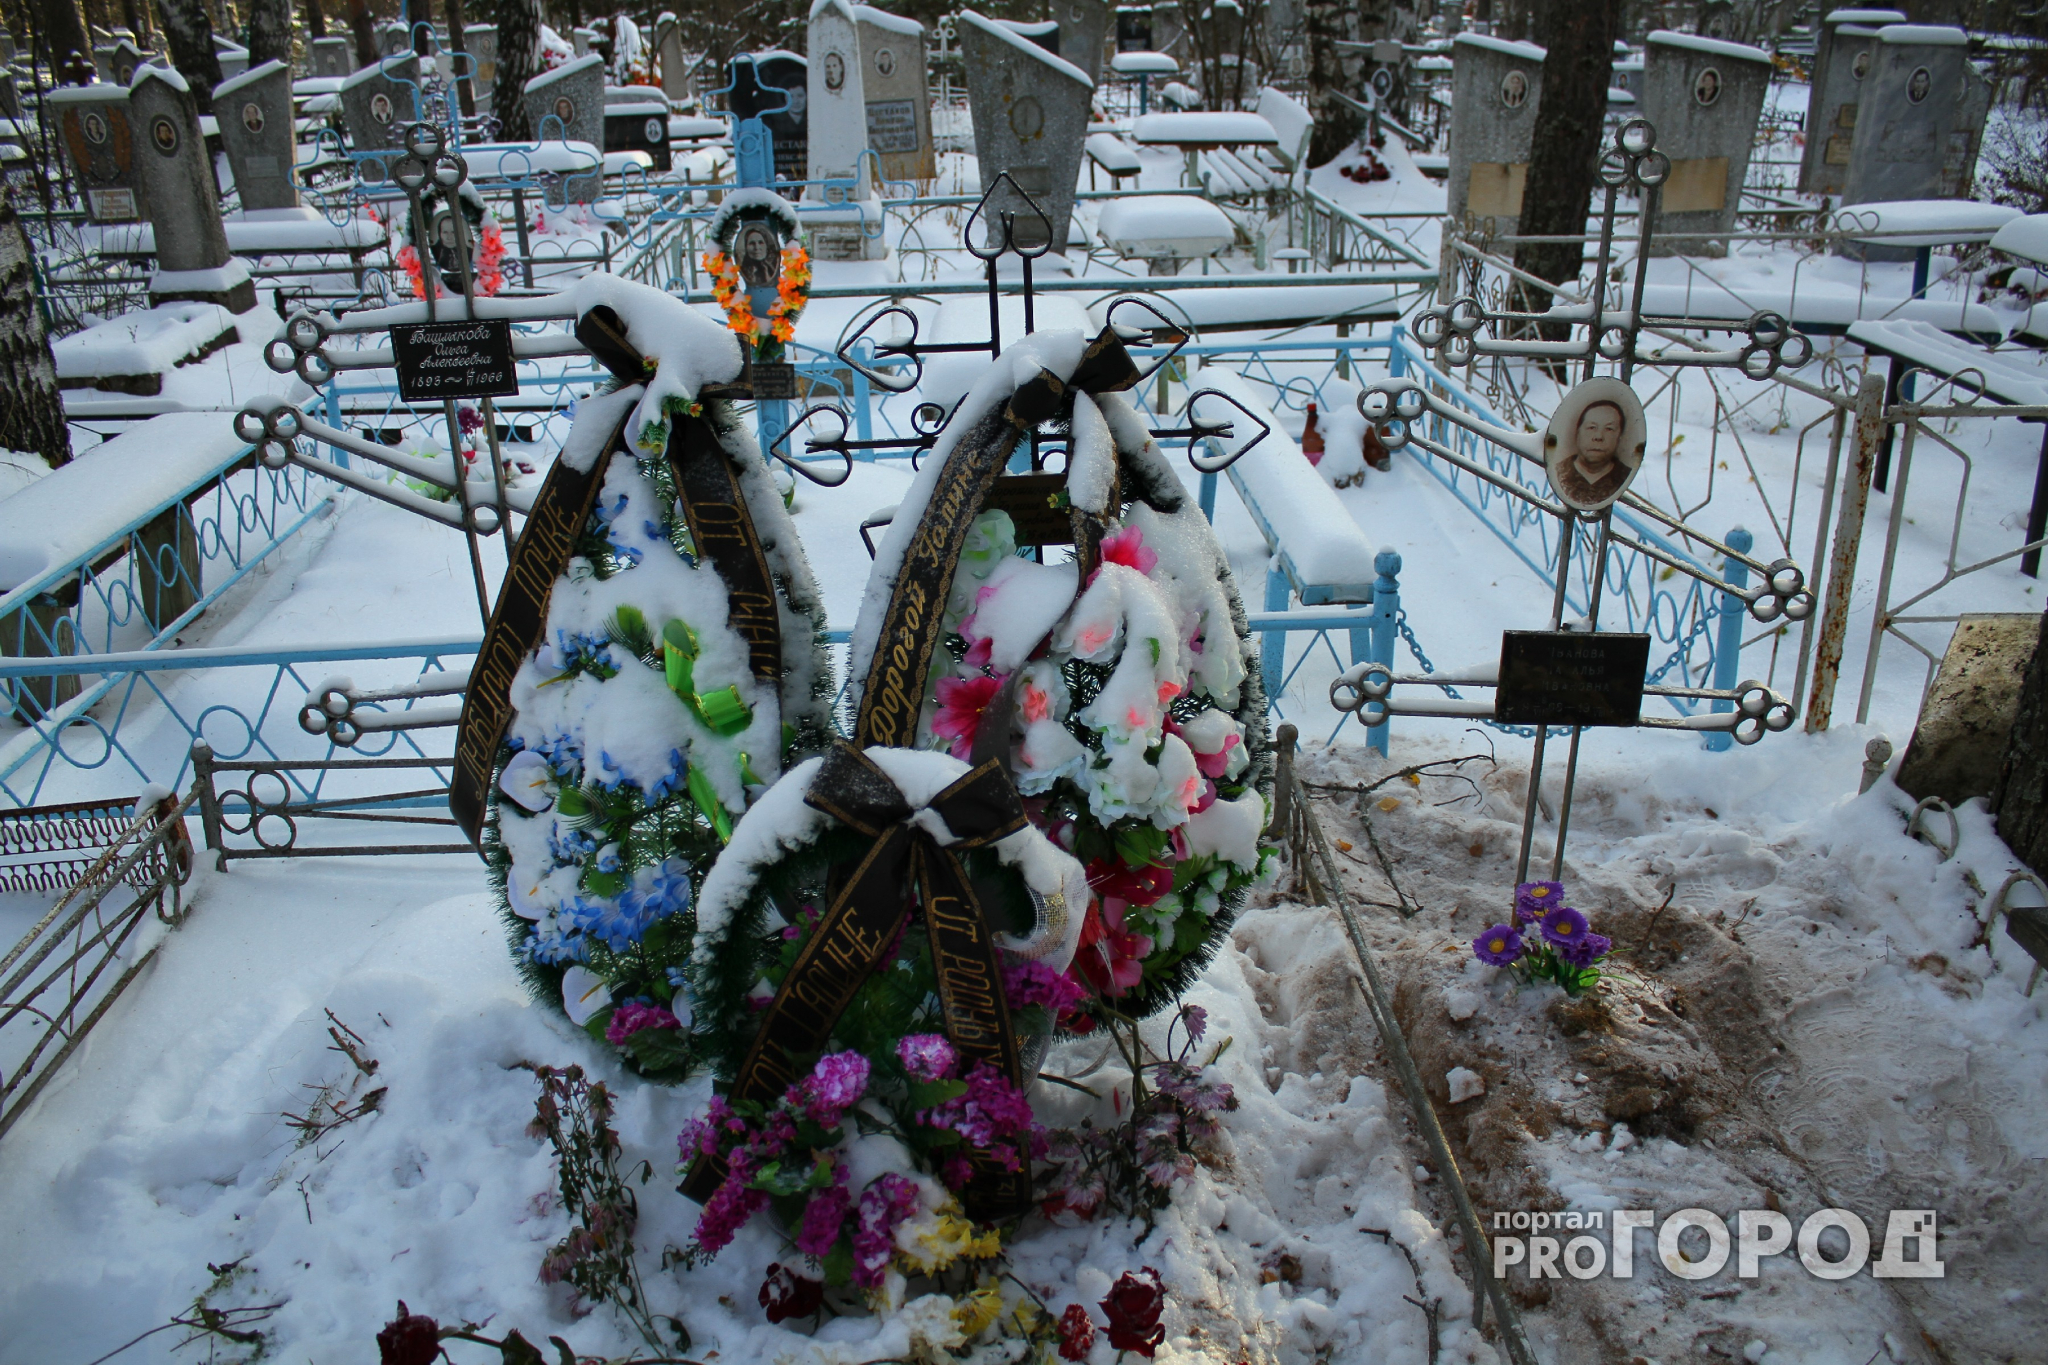 На Осташинском кладбище в Ярославле заканчиваются места: где будут хоронить?